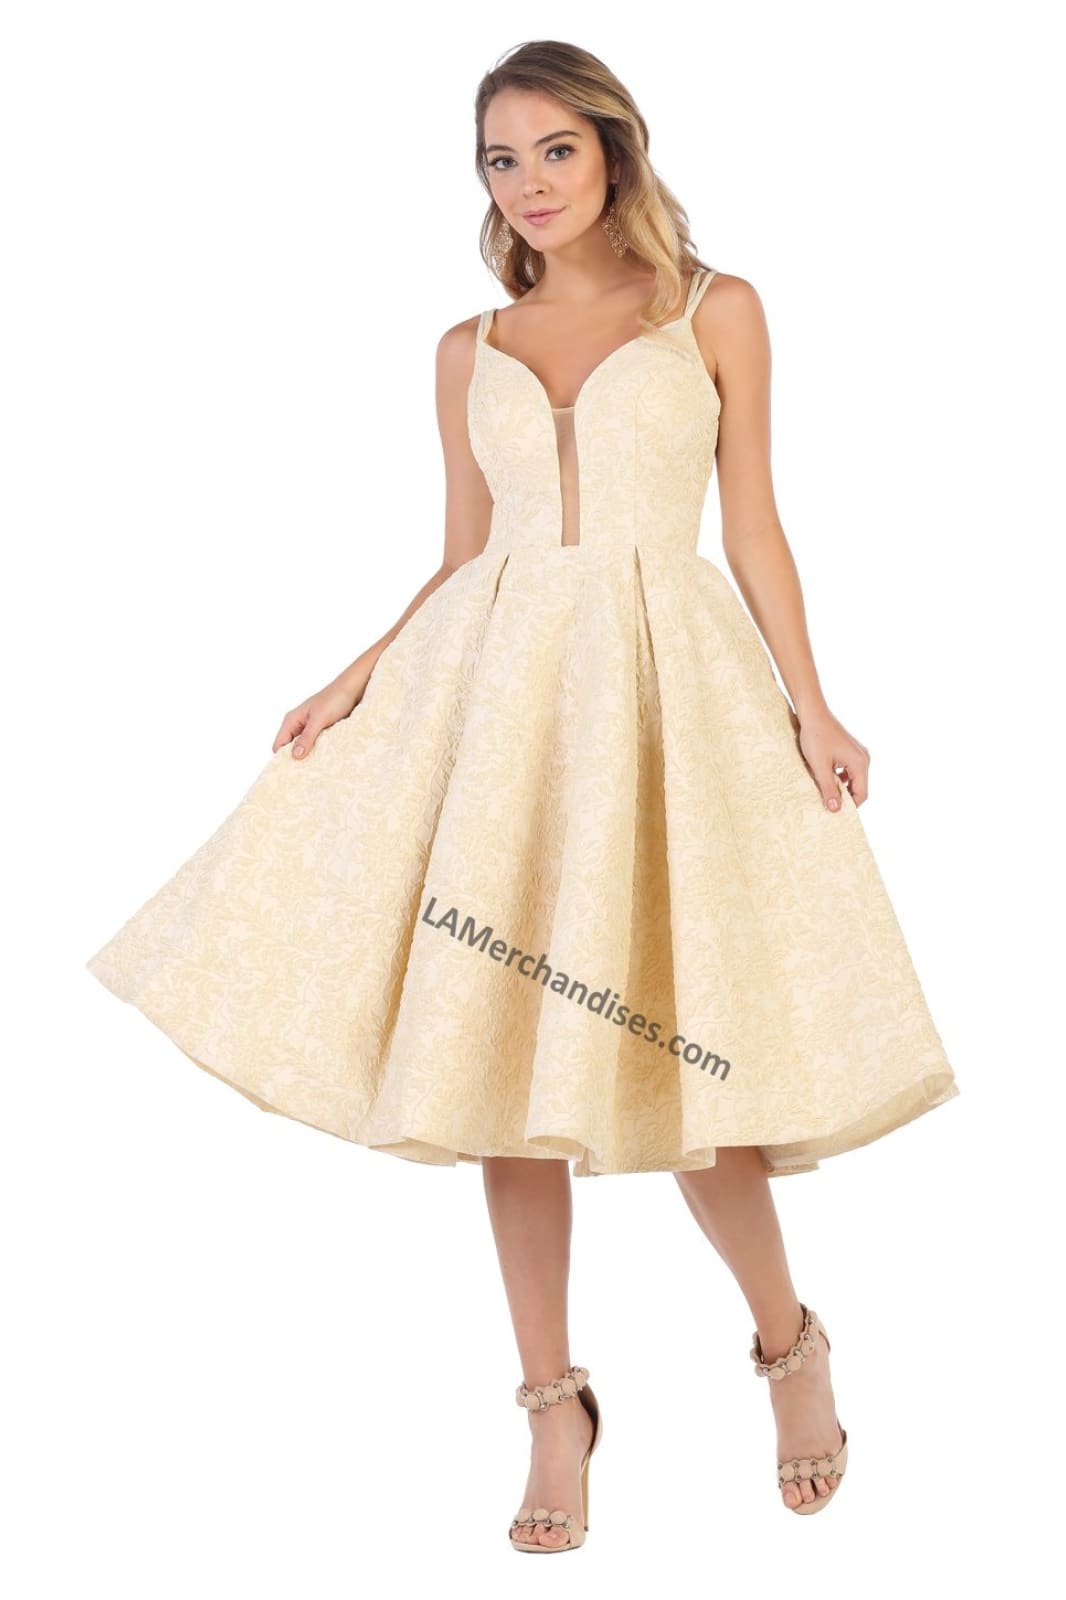 Shoulder straps short jacquard dress with pocket sides- LA7699 - Yellow - LA Merchandise